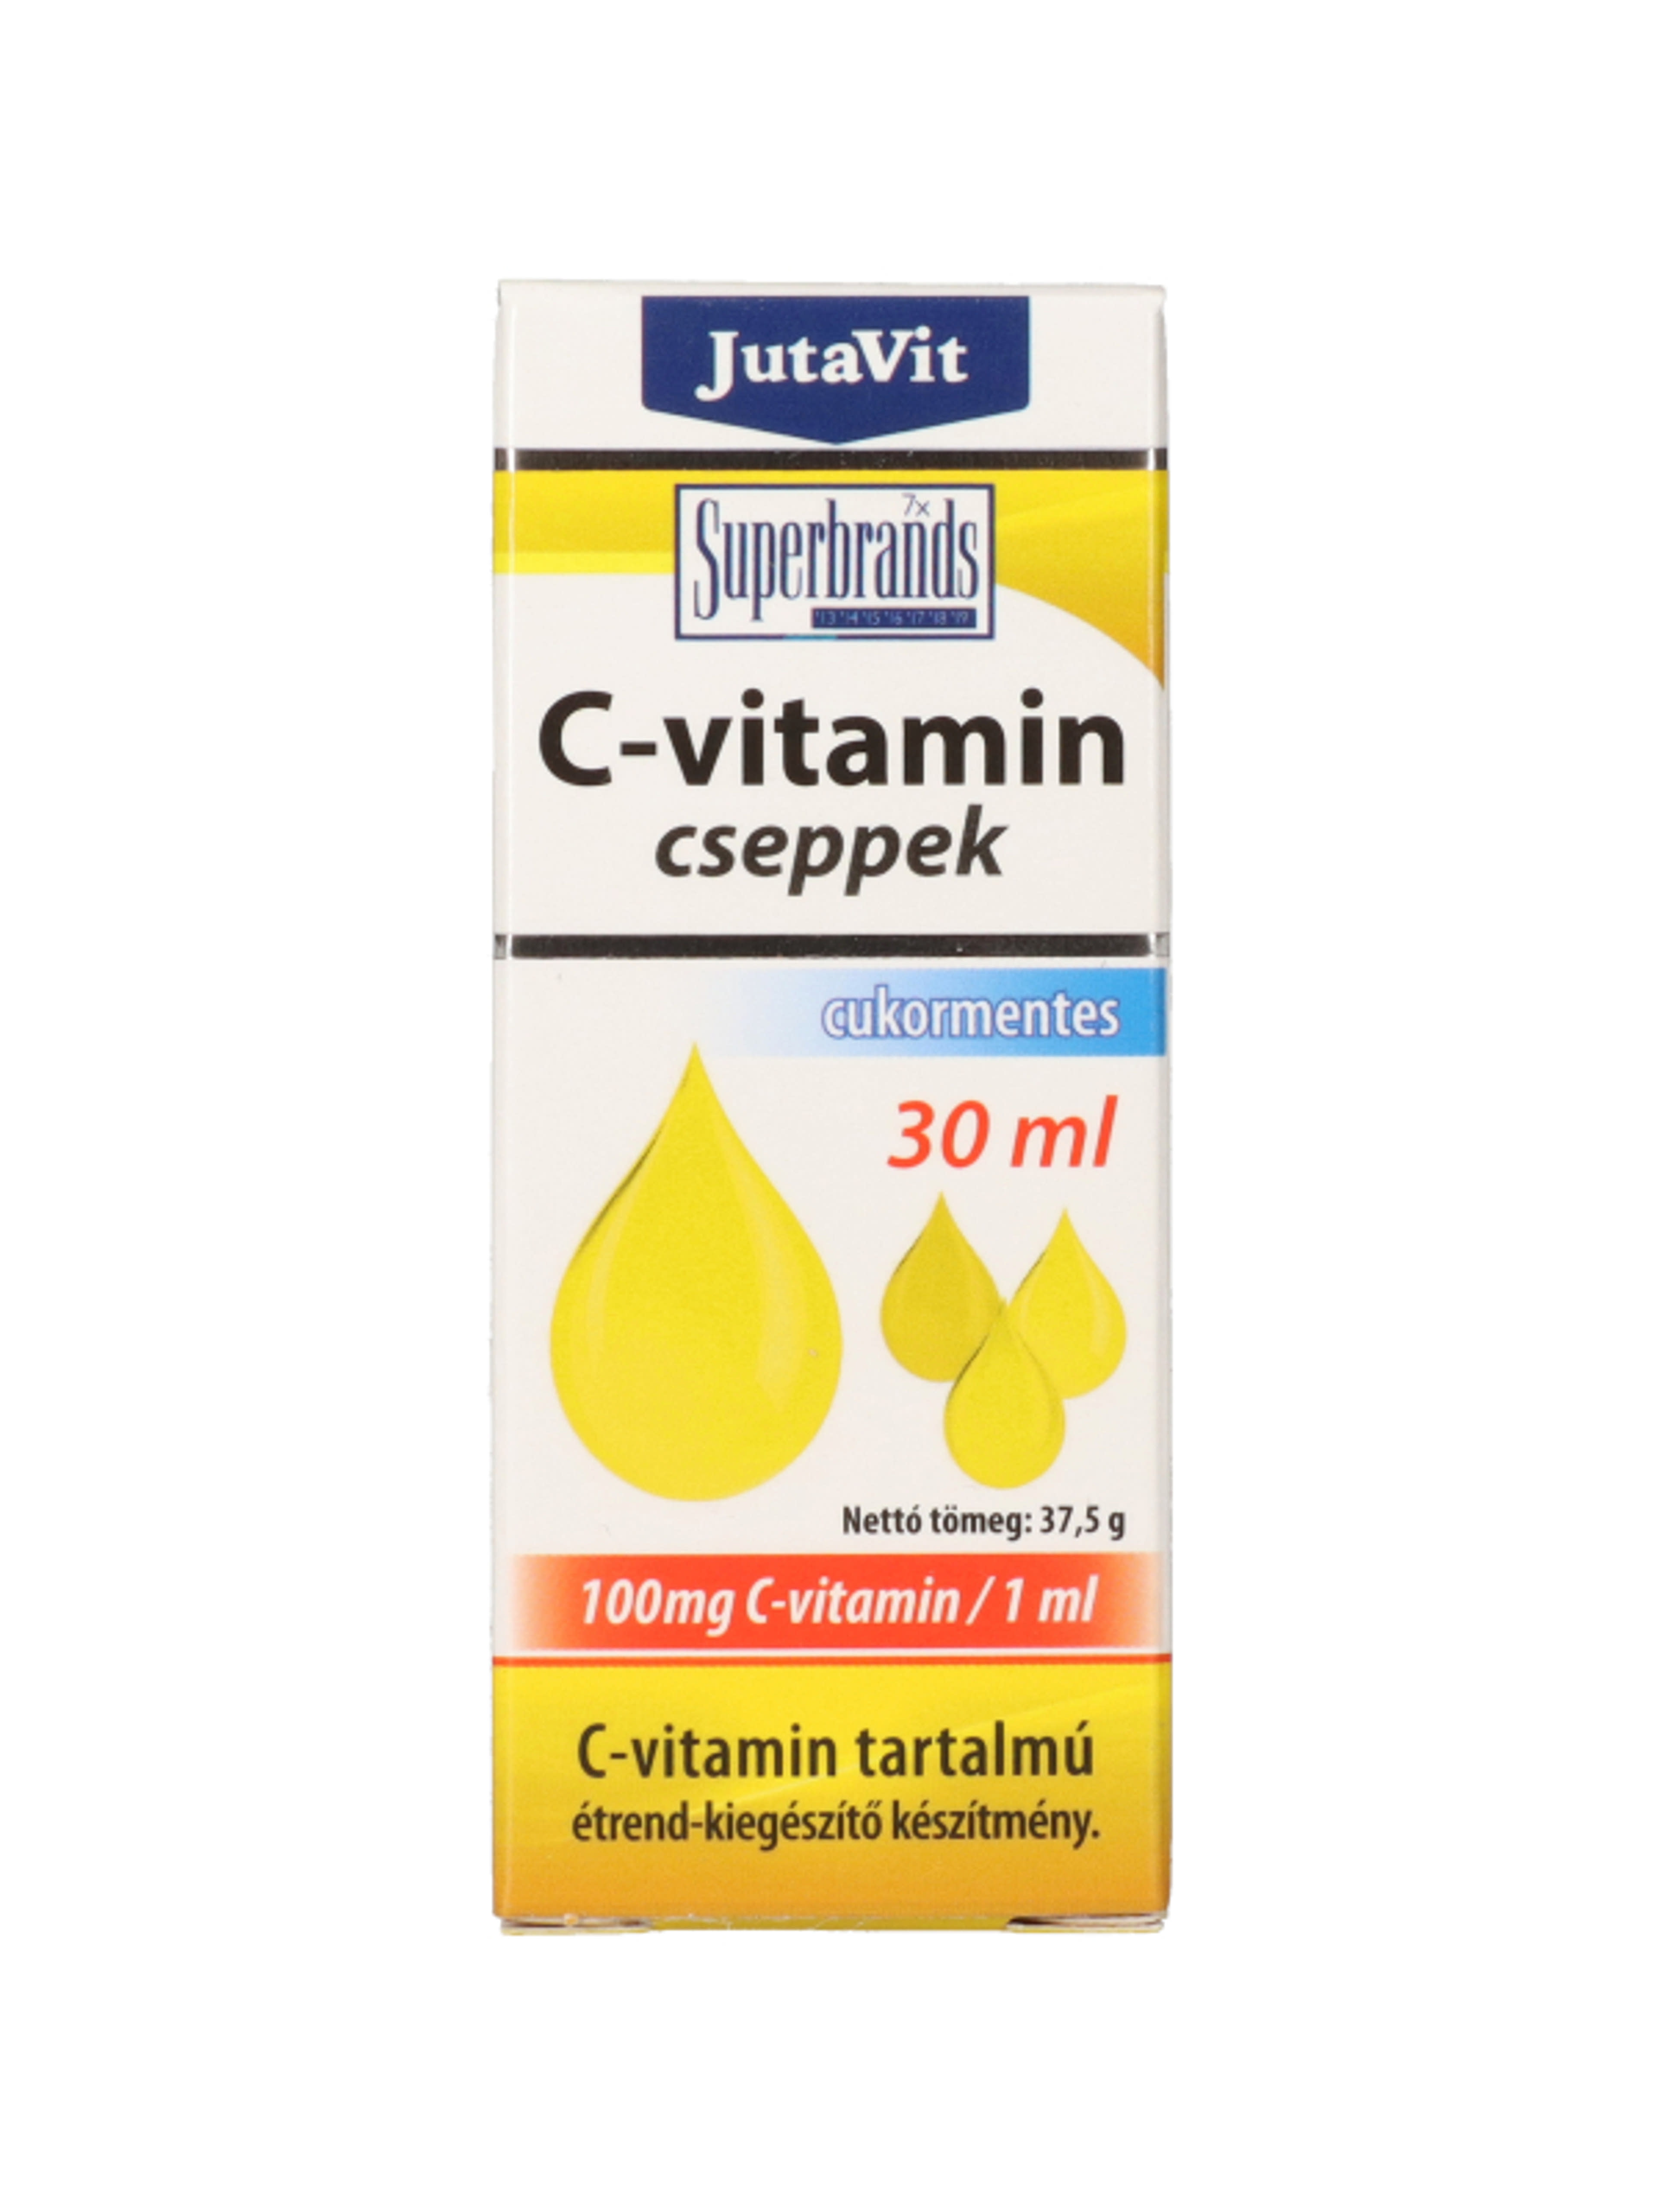 JutaVit C-vitamin csepp 100mg/ml - 30 ml-1